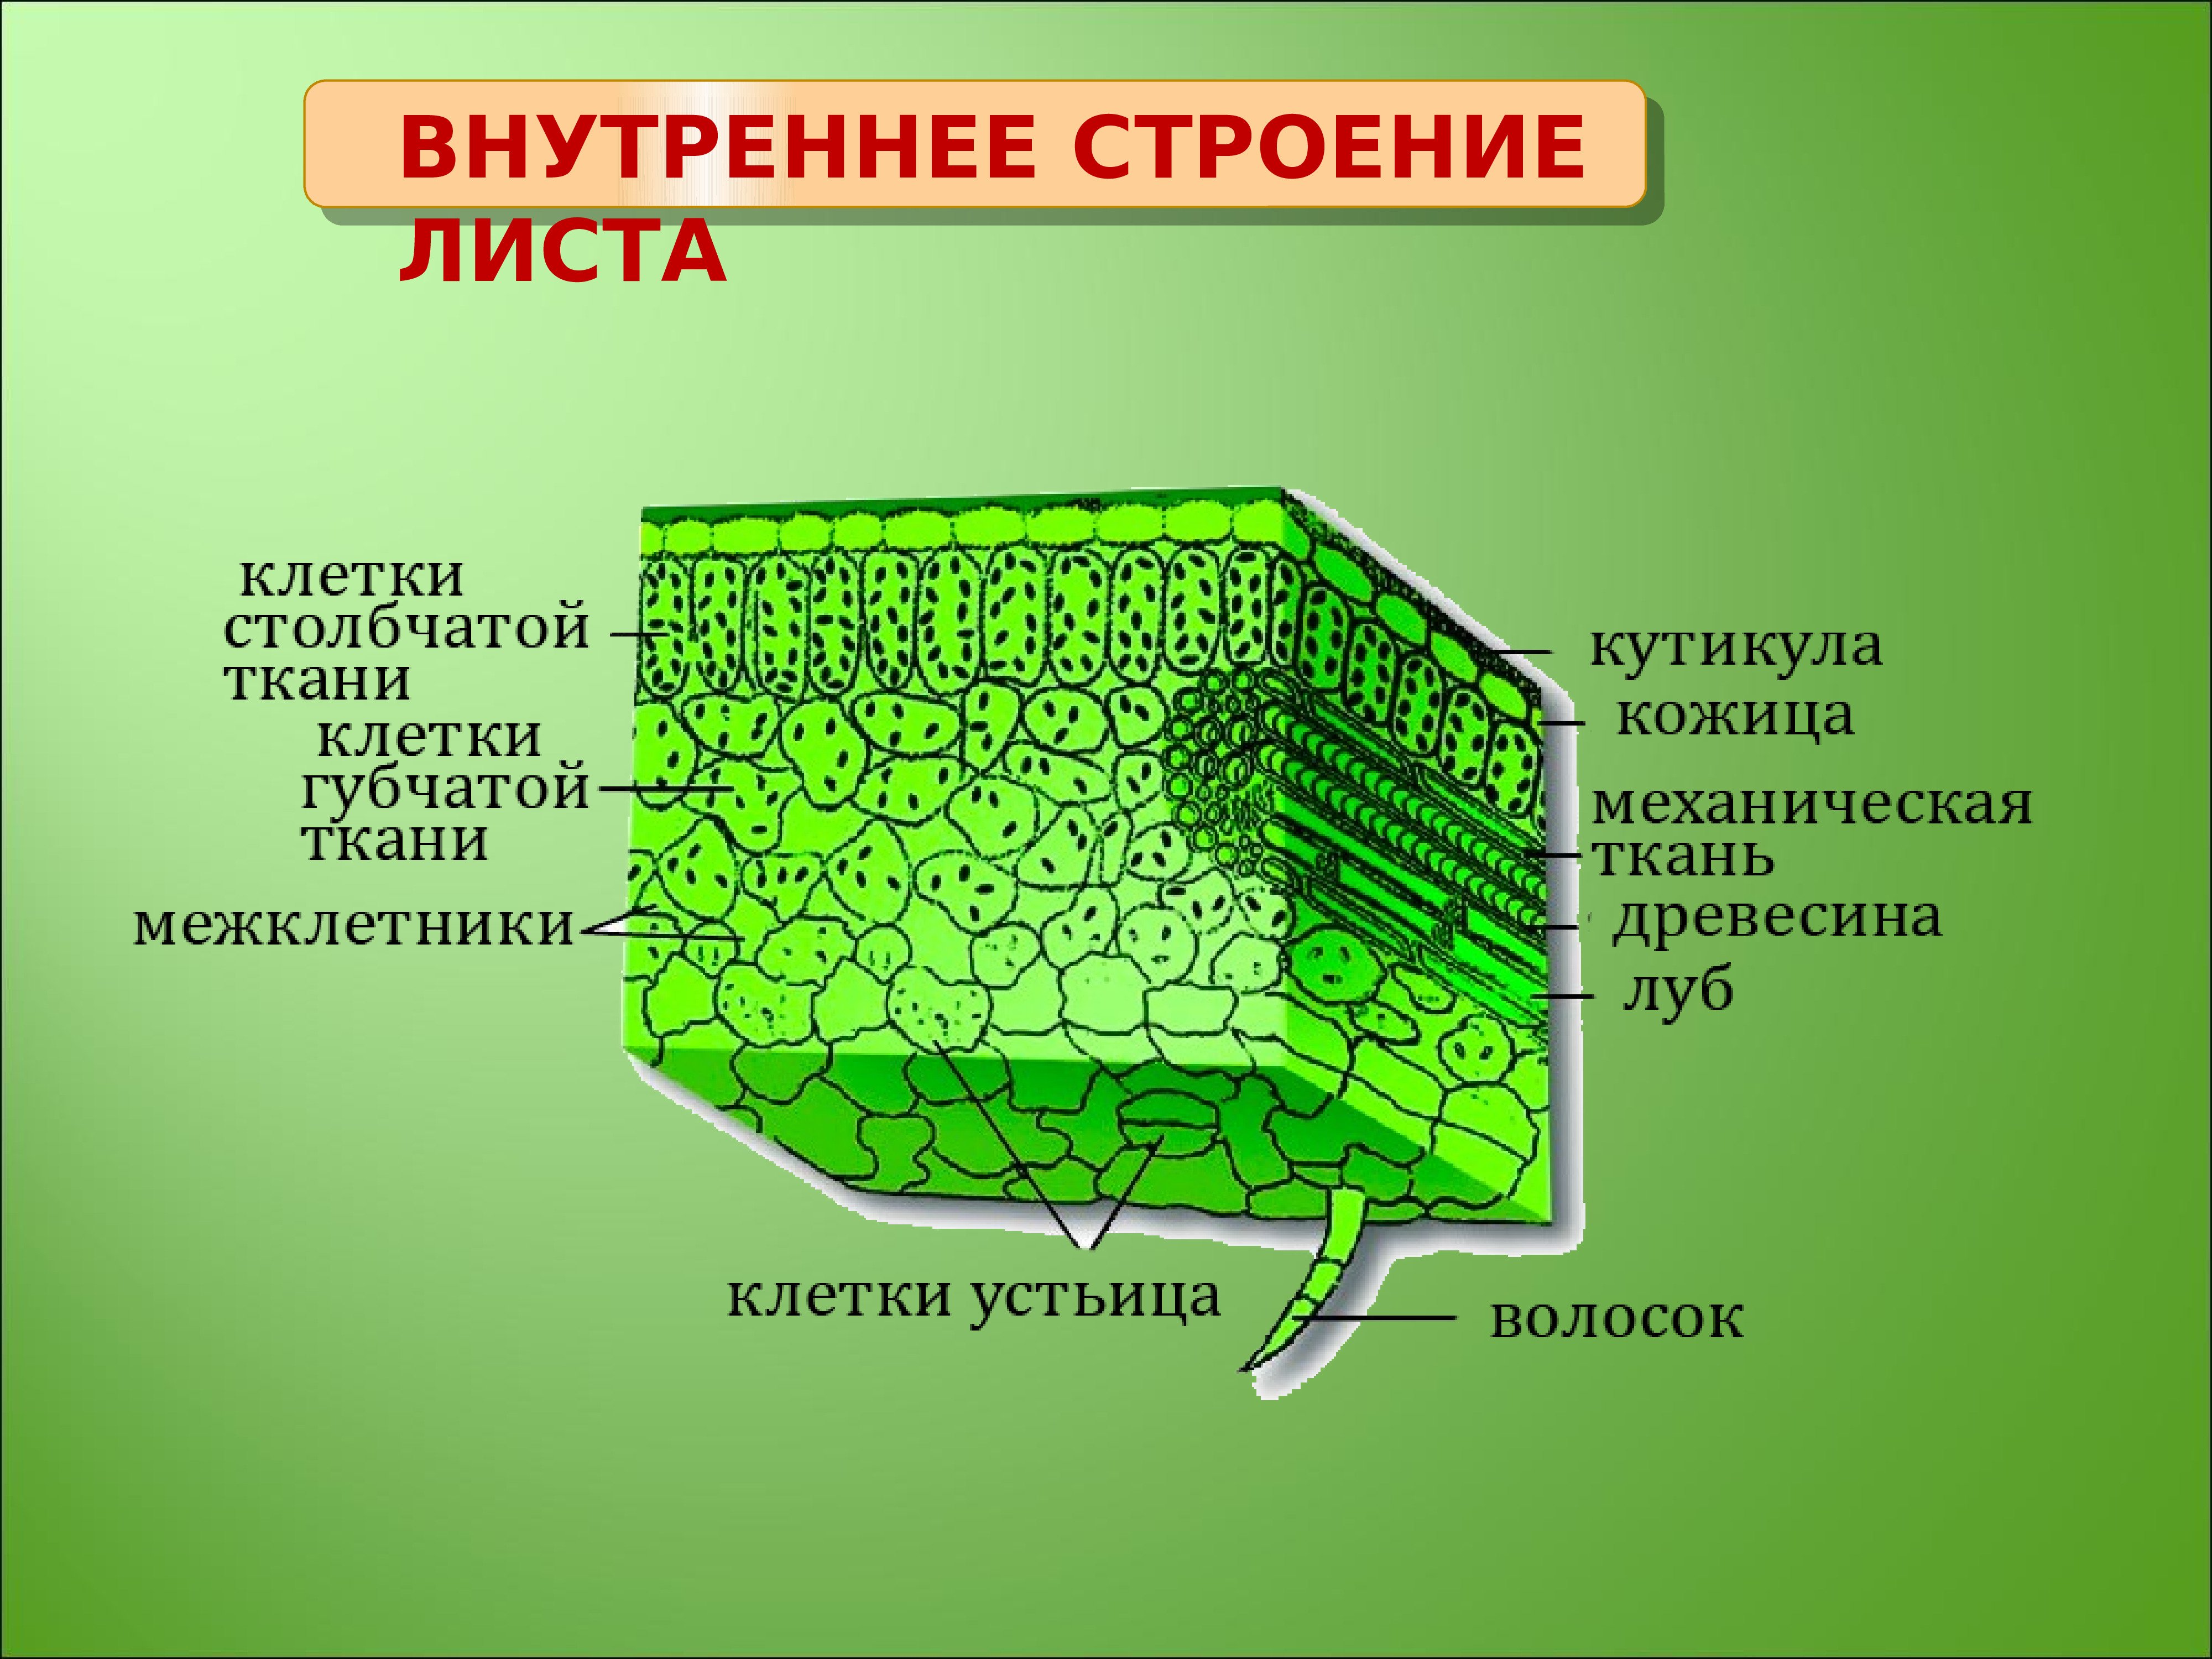 В клетках мякоти листа. Внутреннее строение листа ткани. Внутреннее строение листа основная ткань. Внутреннее строение листа фотосинтезирующая ткань. Основная ткань структура листа.